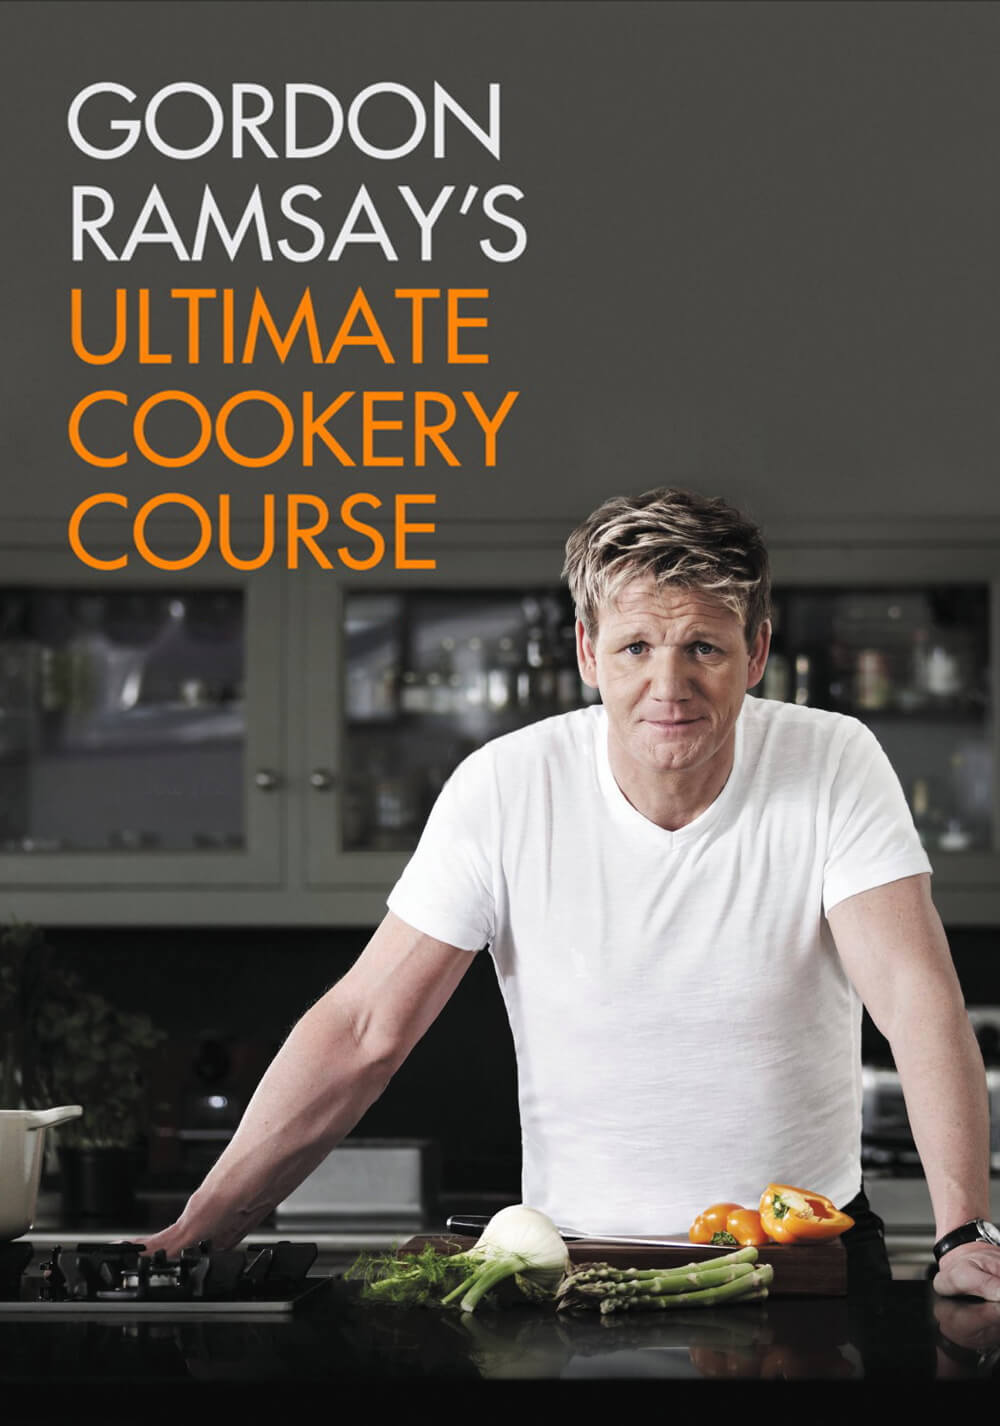 Gordon Ramsay Mistrovske vareni / Gordon Ramsay's Ultimate Cookery Course - Cela serie (CZ)(2012)[1080p][TvRip] = CSFD 86%